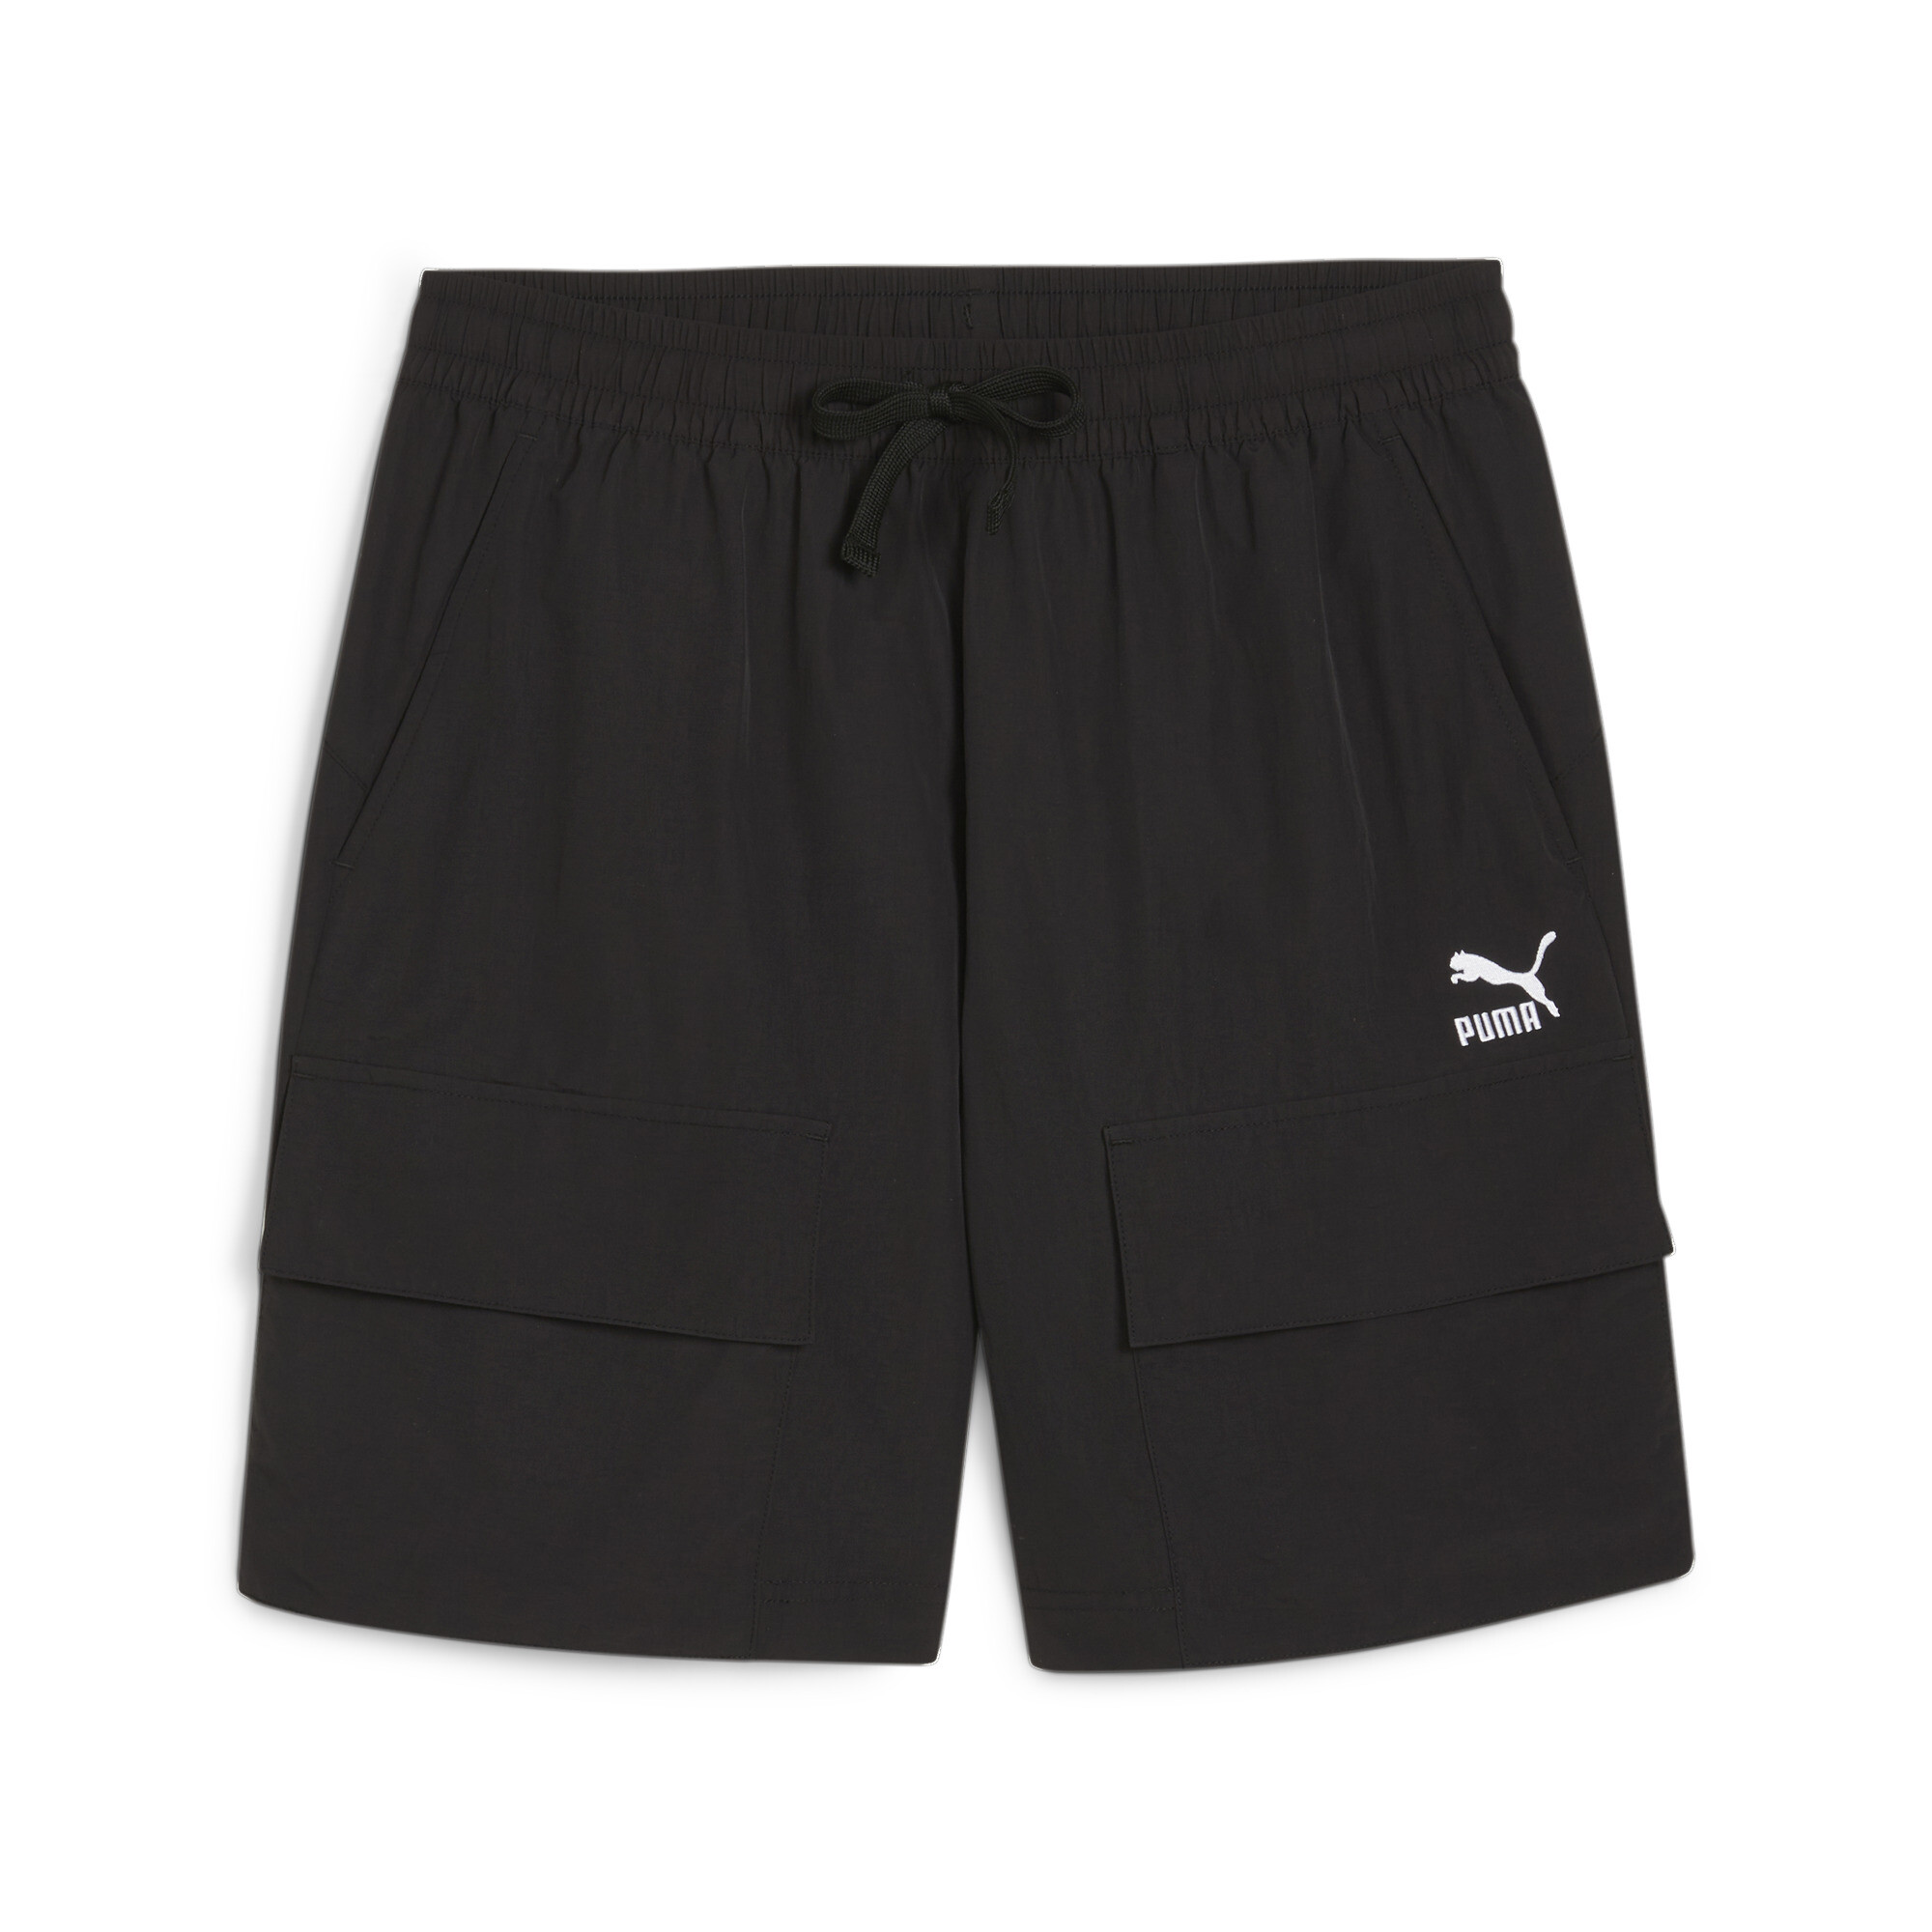 Men's PUMA CLASSICS Cargo Shorts In Black, Size Medium